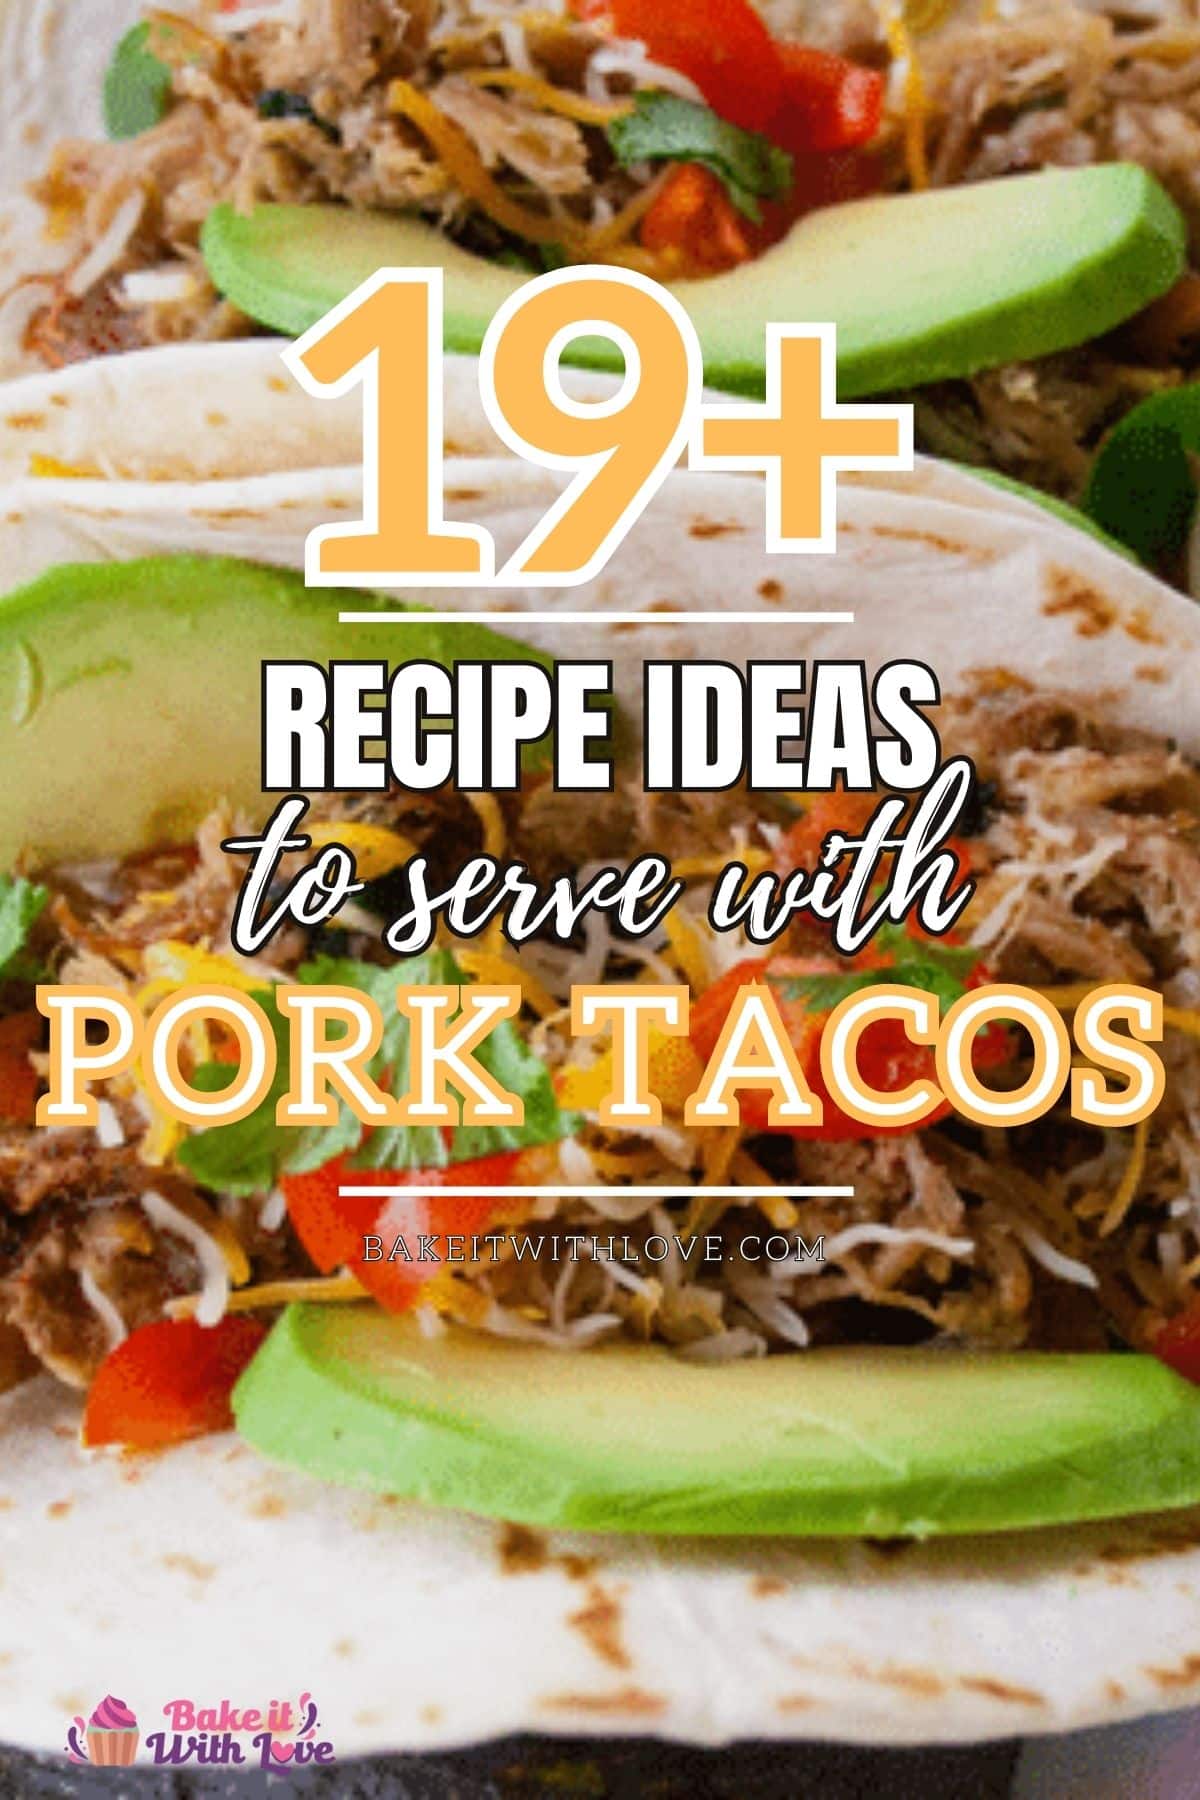 Slika visoke pribadače s tekstom o tome što poslužiti uz svinjske tacose.